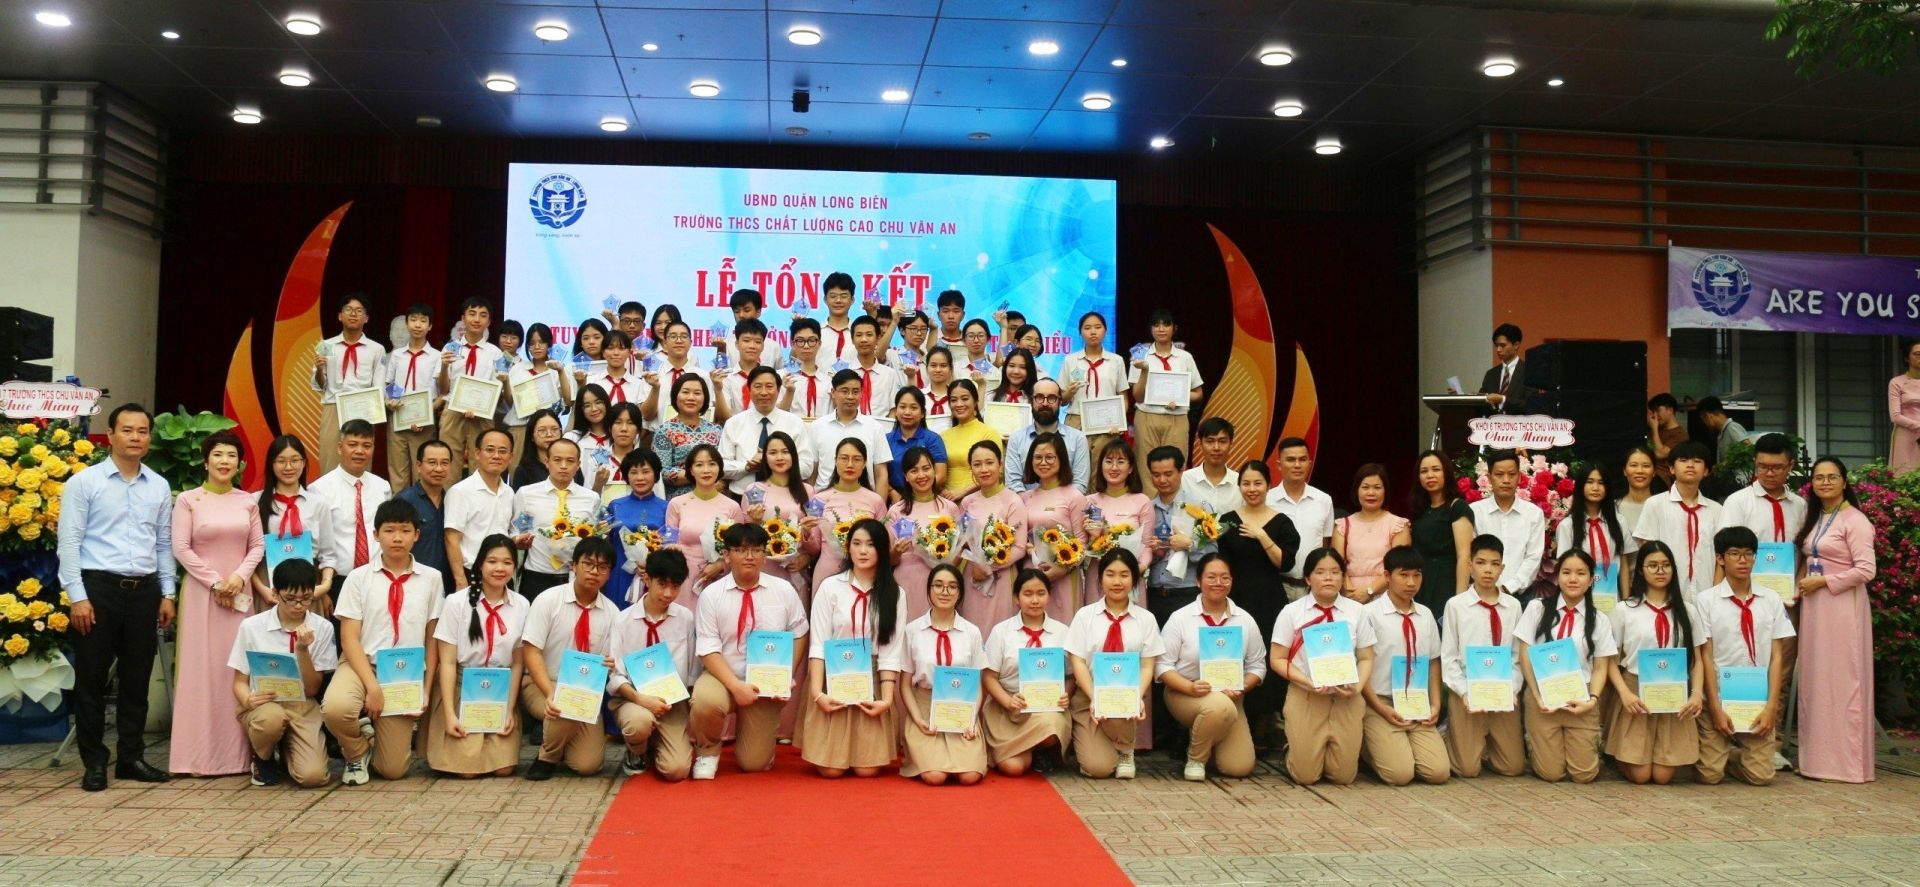 Những thành quả ngọt ngào của tập thể thầy cô giáo và học sinh nhà trường đã góp phần làm nên “thương hiệu” trường THCS chất lượng cao Chu Văn An. 